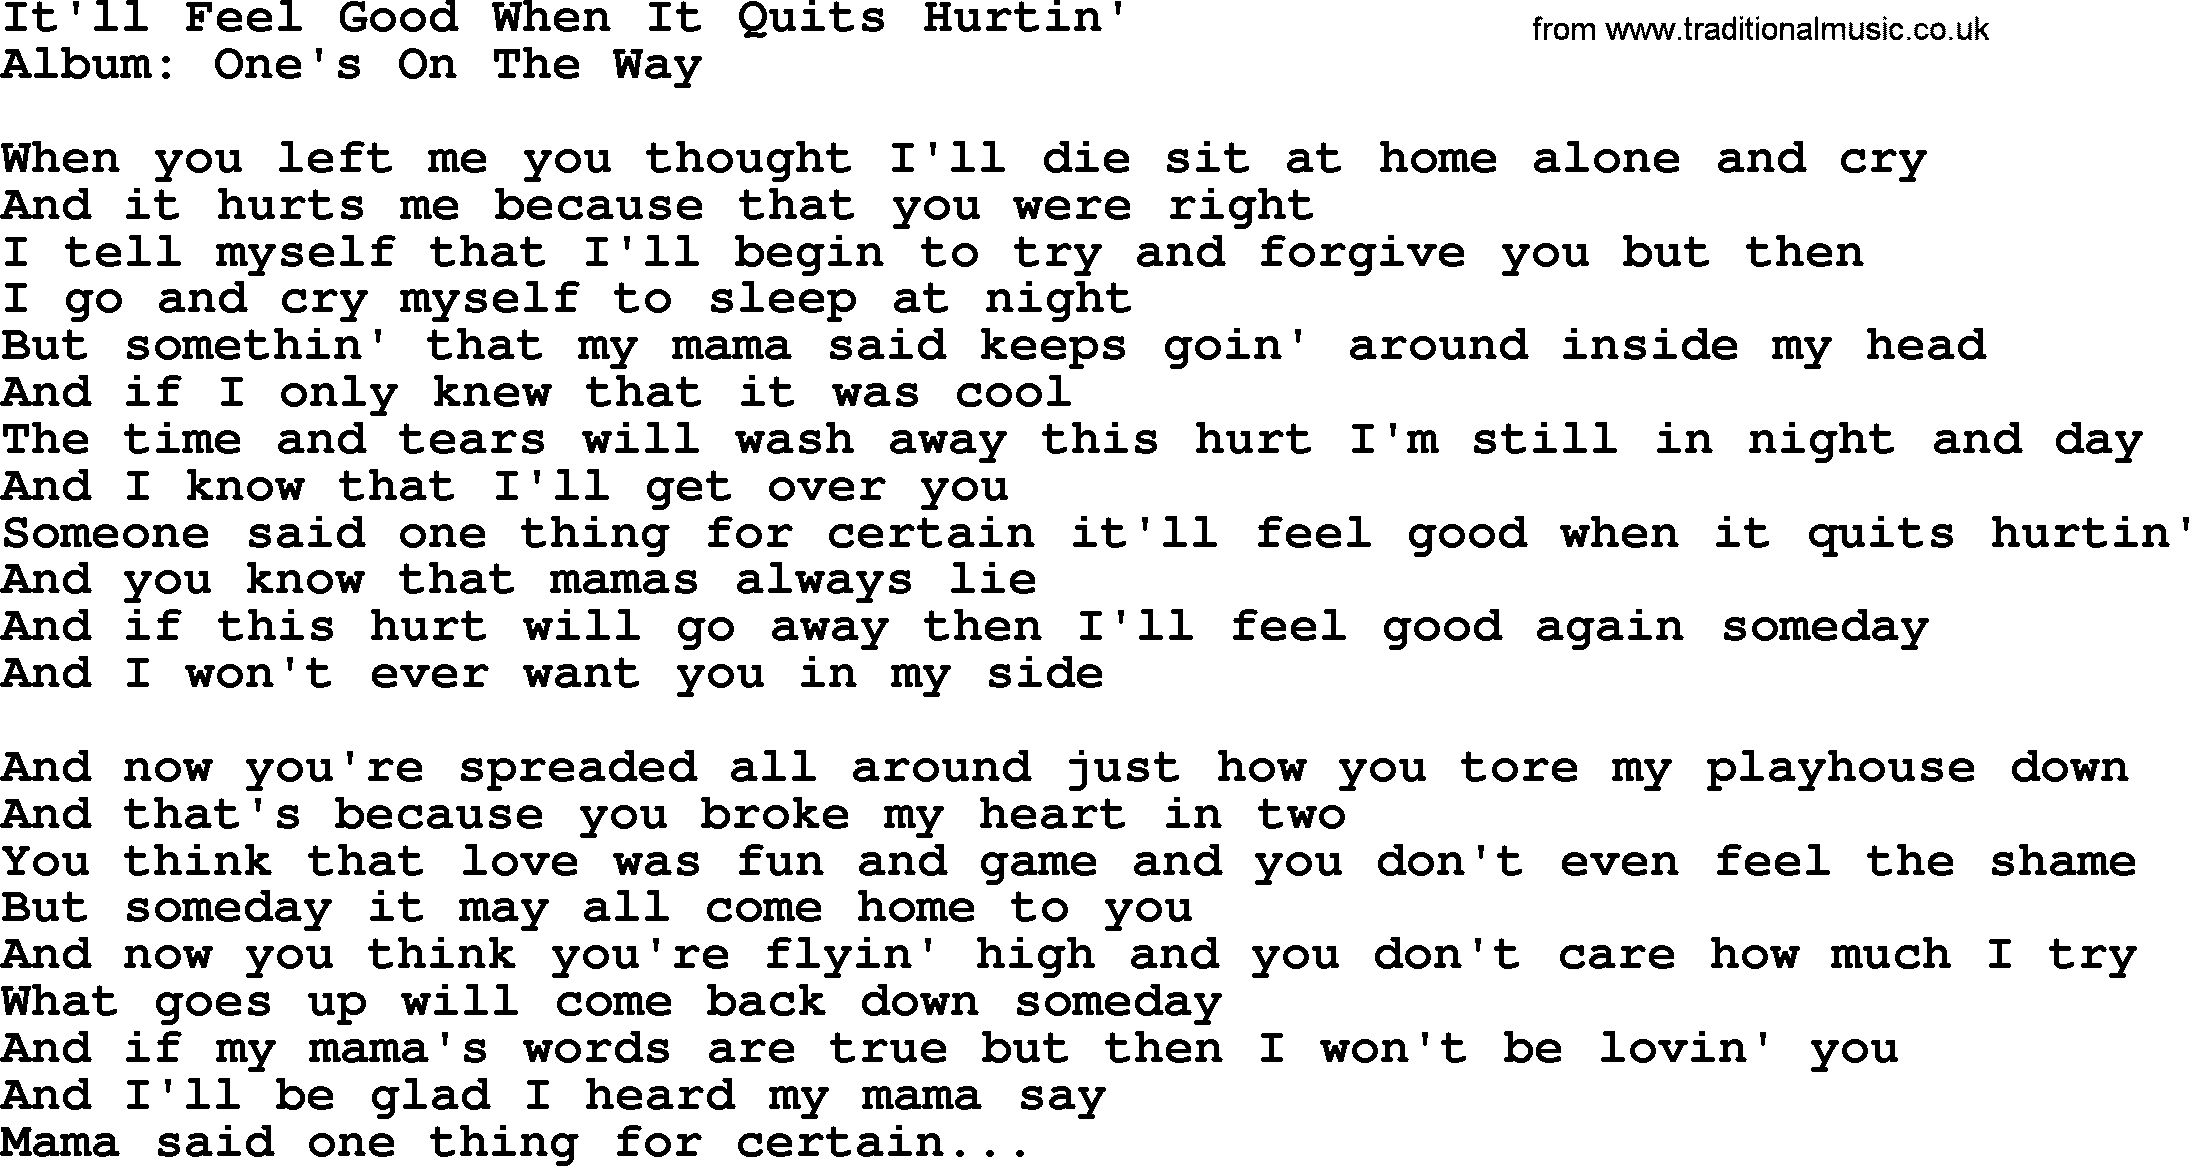 Loretta Lynn song: It'll Feel Good When It Quits Hurtin' lyrics